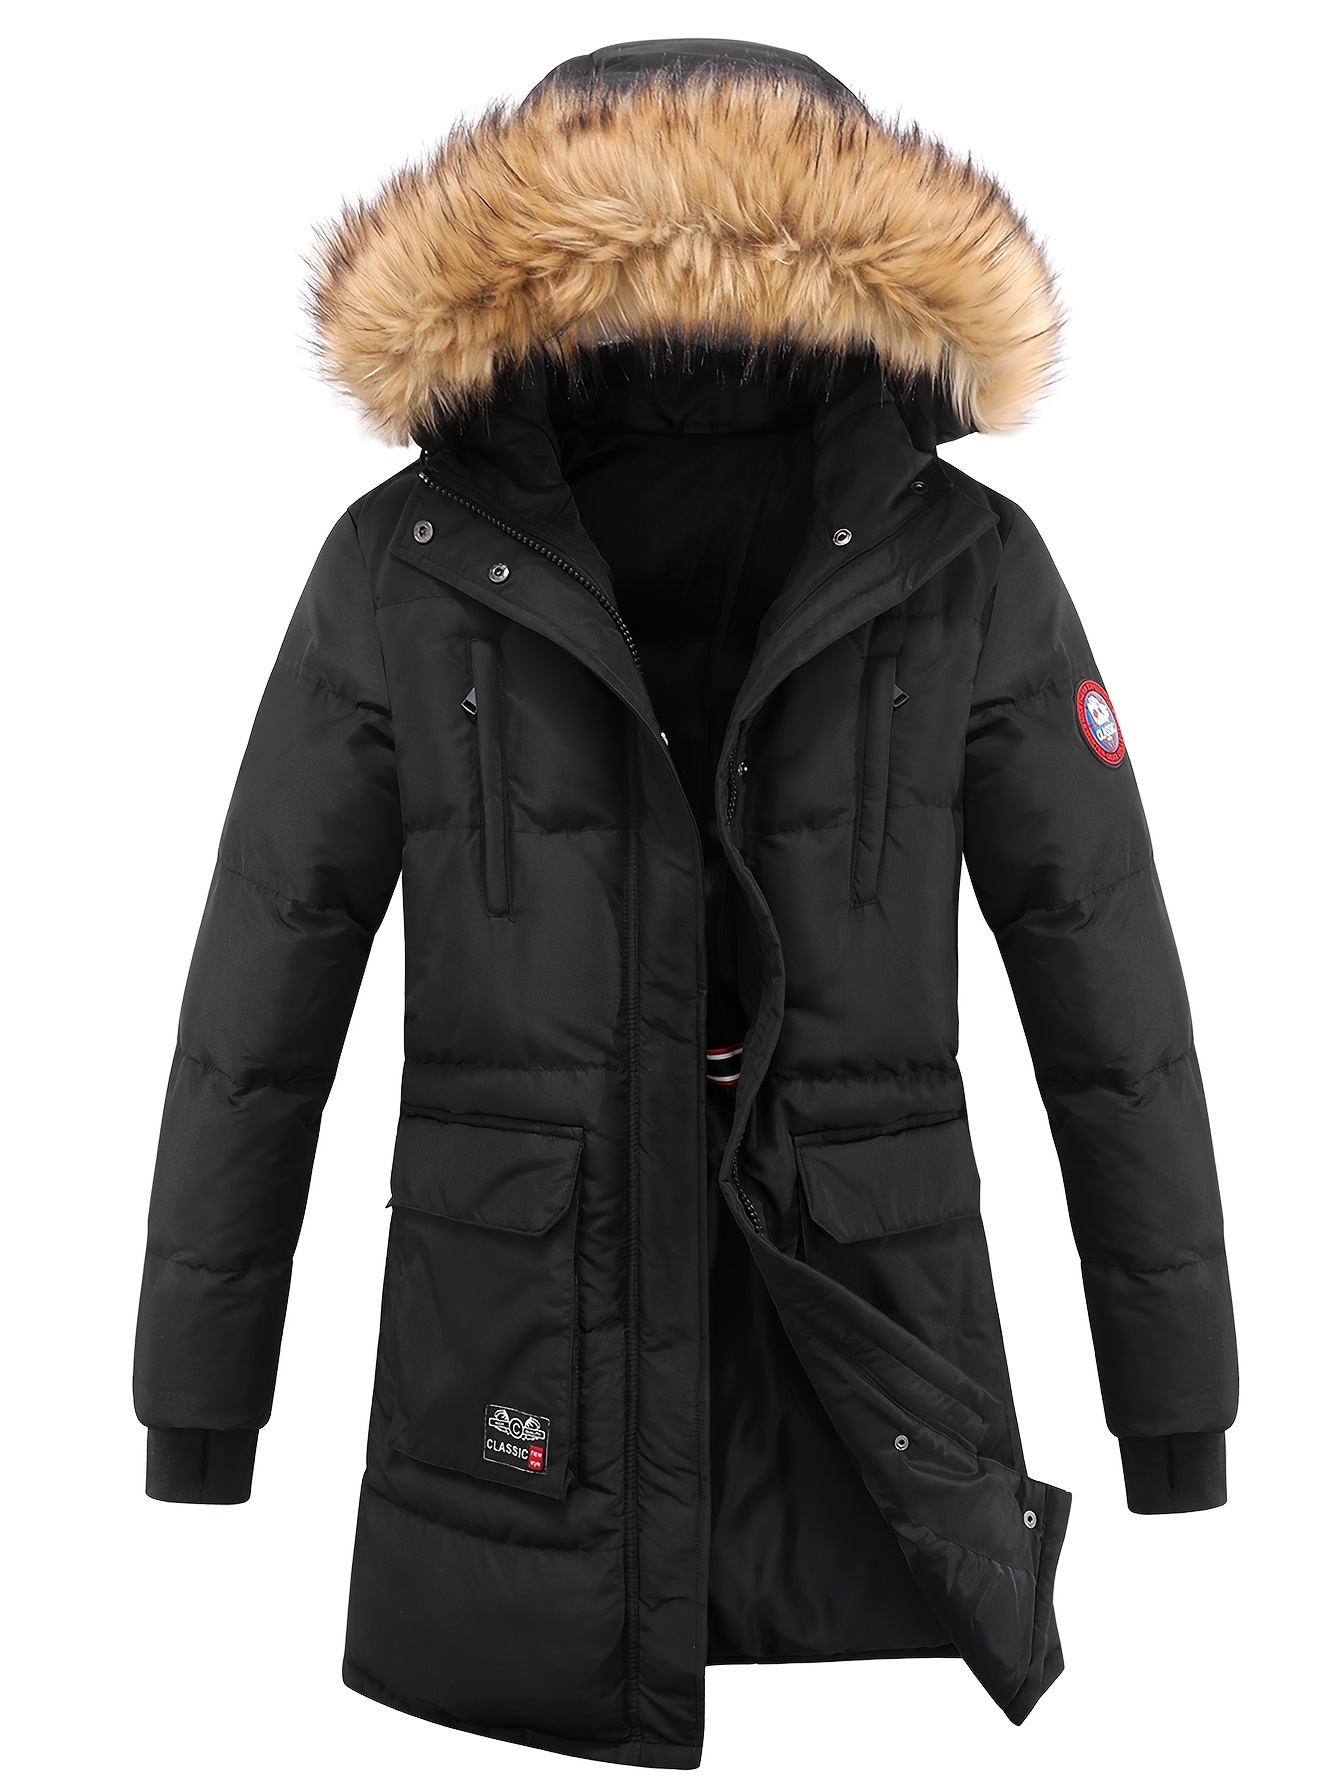 レディース冬用パファージャケット、フェイクファー襟フード付きコート